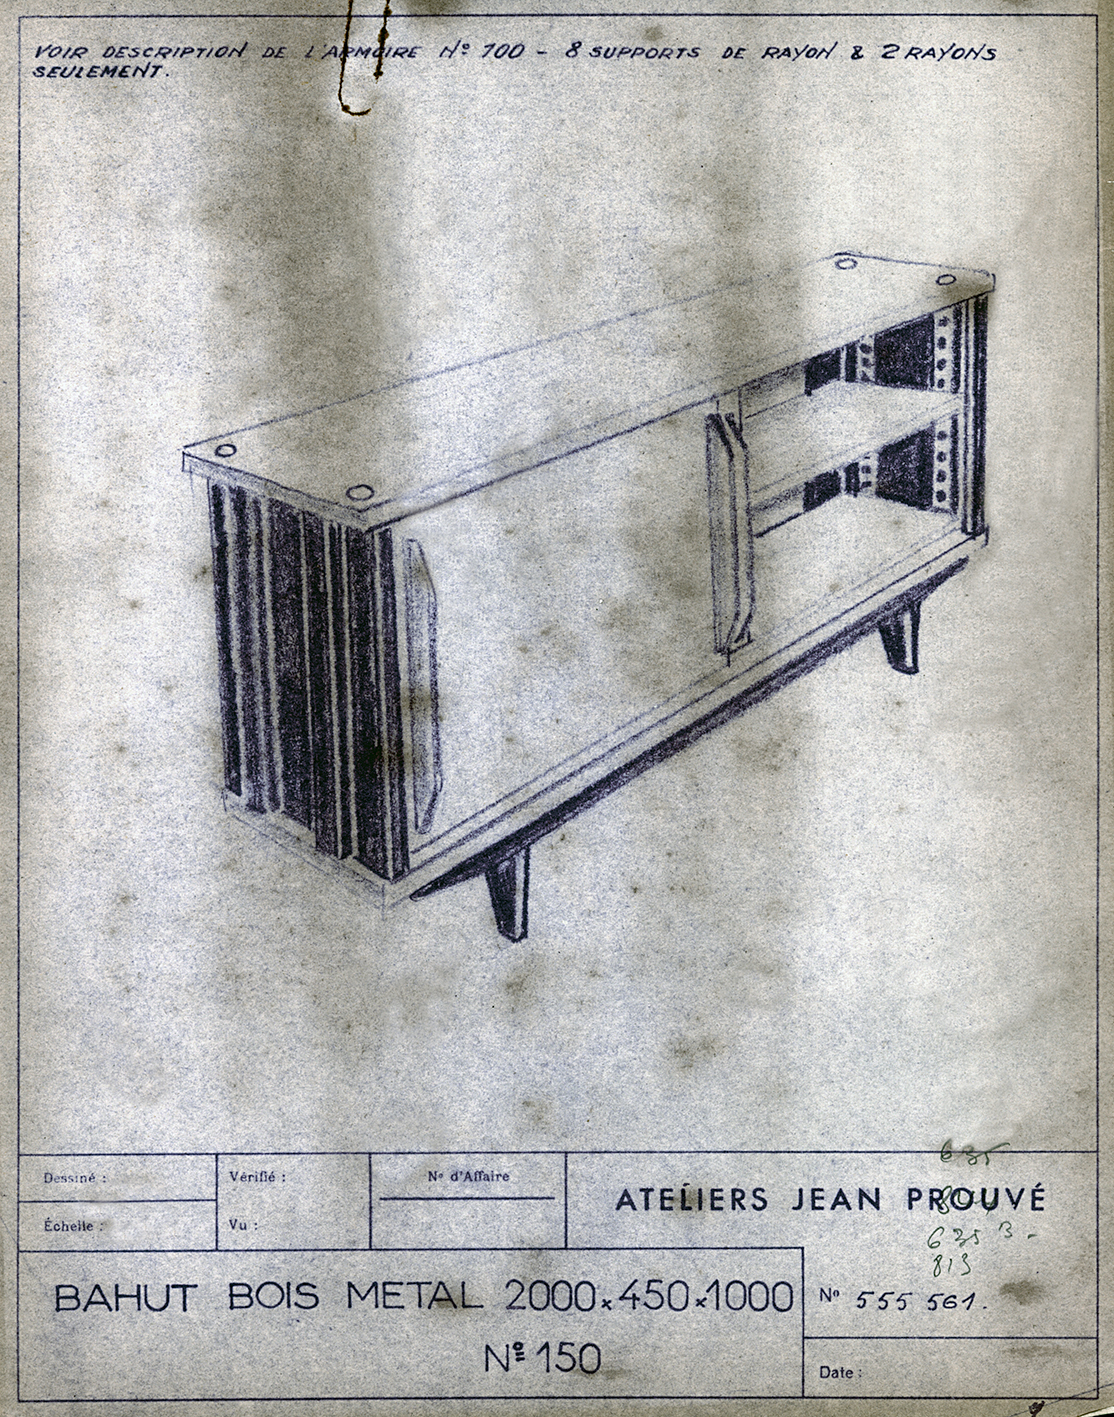 “Wood and metal cabinet no. 150”. Ateliers Jean Prouvé, descriptive sheet, no. 555.561, ca. 1953.